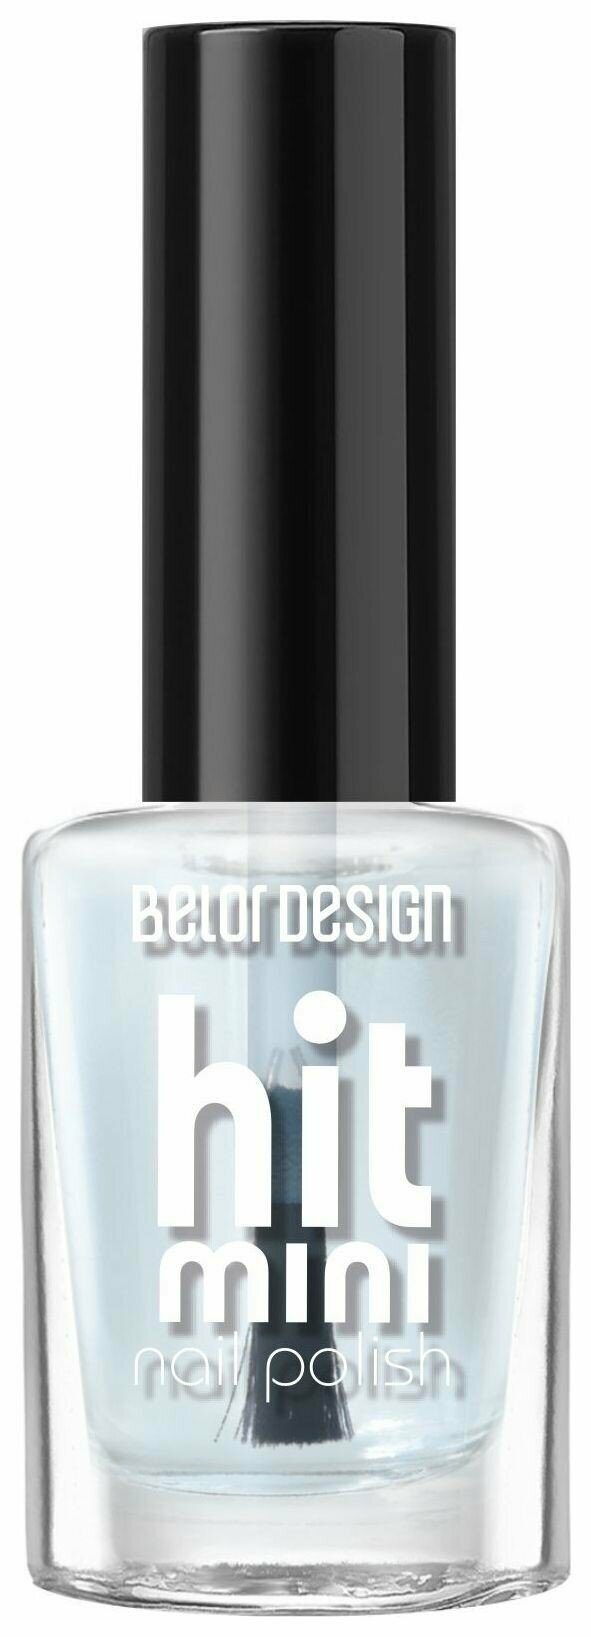 Belor Design Лак для ногтей Mini Hit - Белорусская косметика